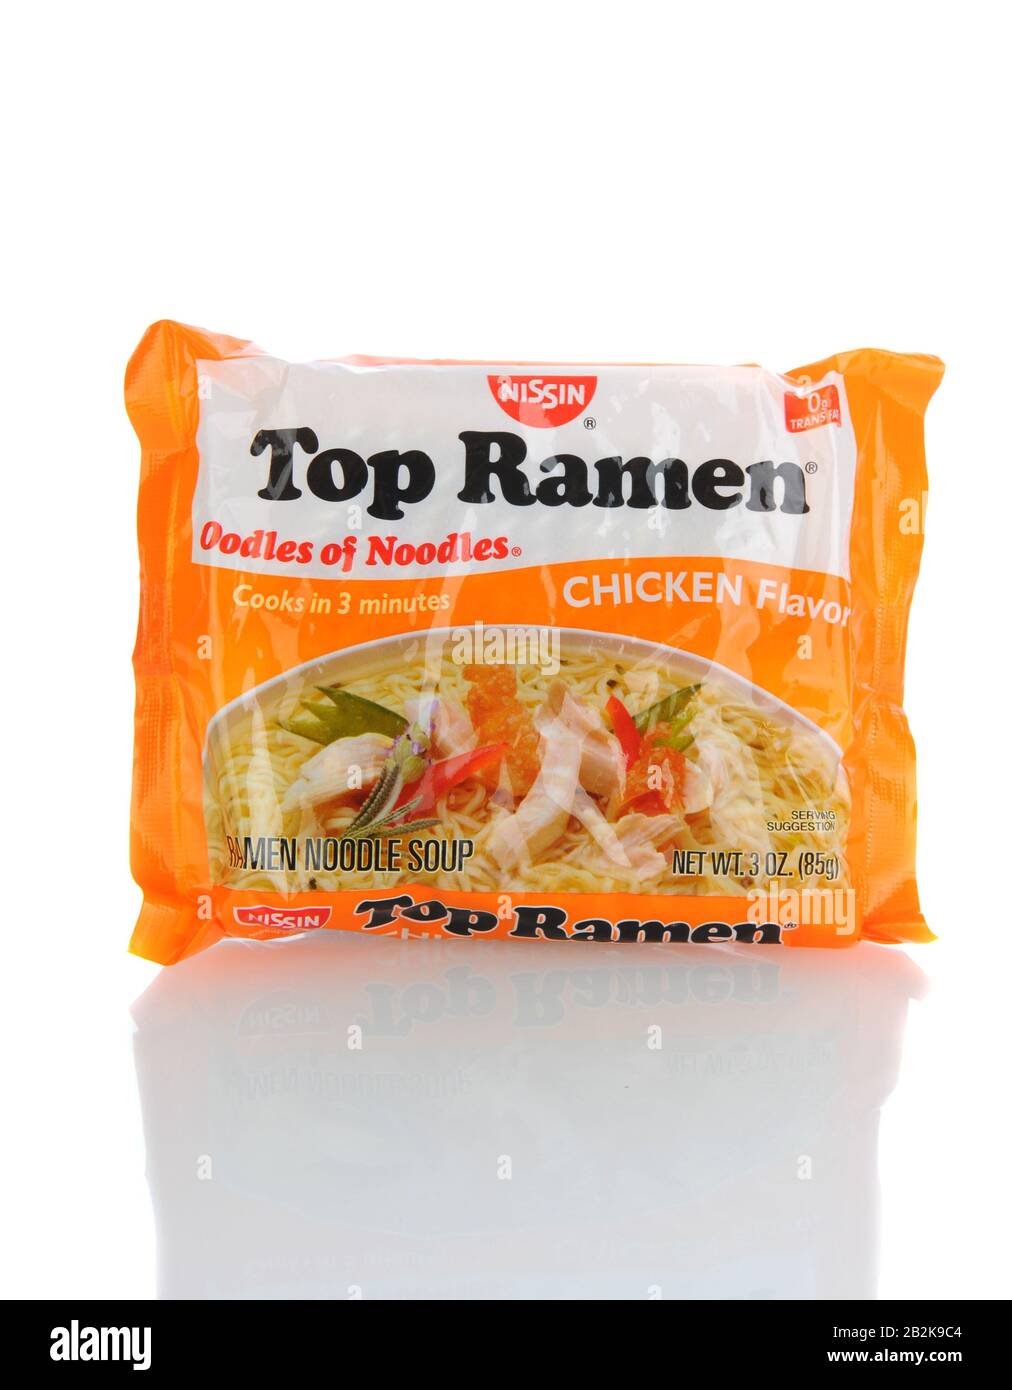 Irvine, CA - 21 gennaio 2013: Un pacchetto da 3 once di Top Ramen Chicken Flavour. Prodotto da Nissin Foods, Top Ramen è un noodle ramen preferito da allora Foto Stock